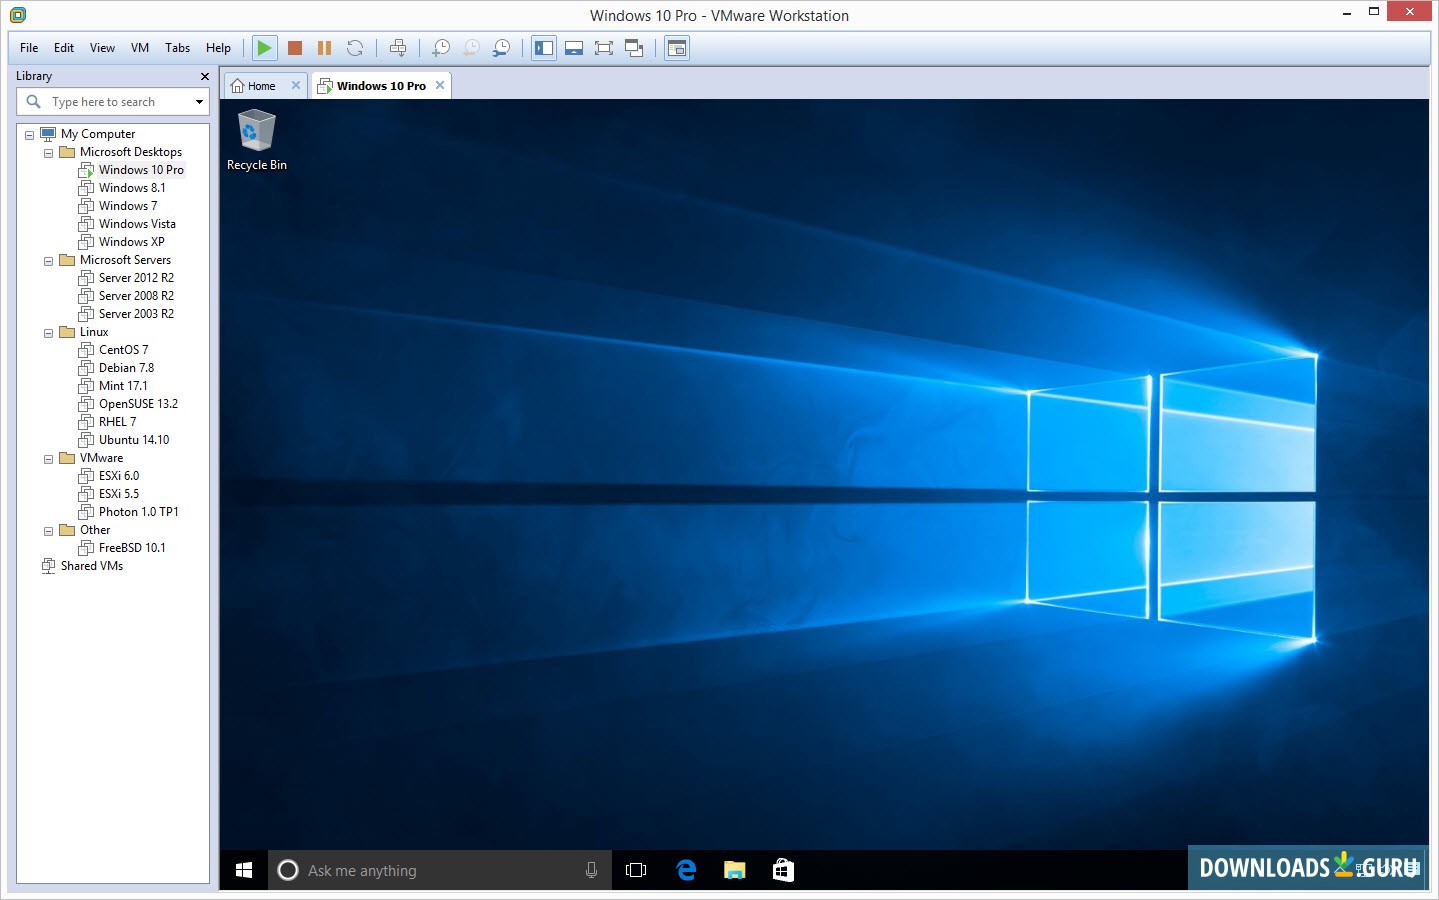 vmware workstation windows 10 free download